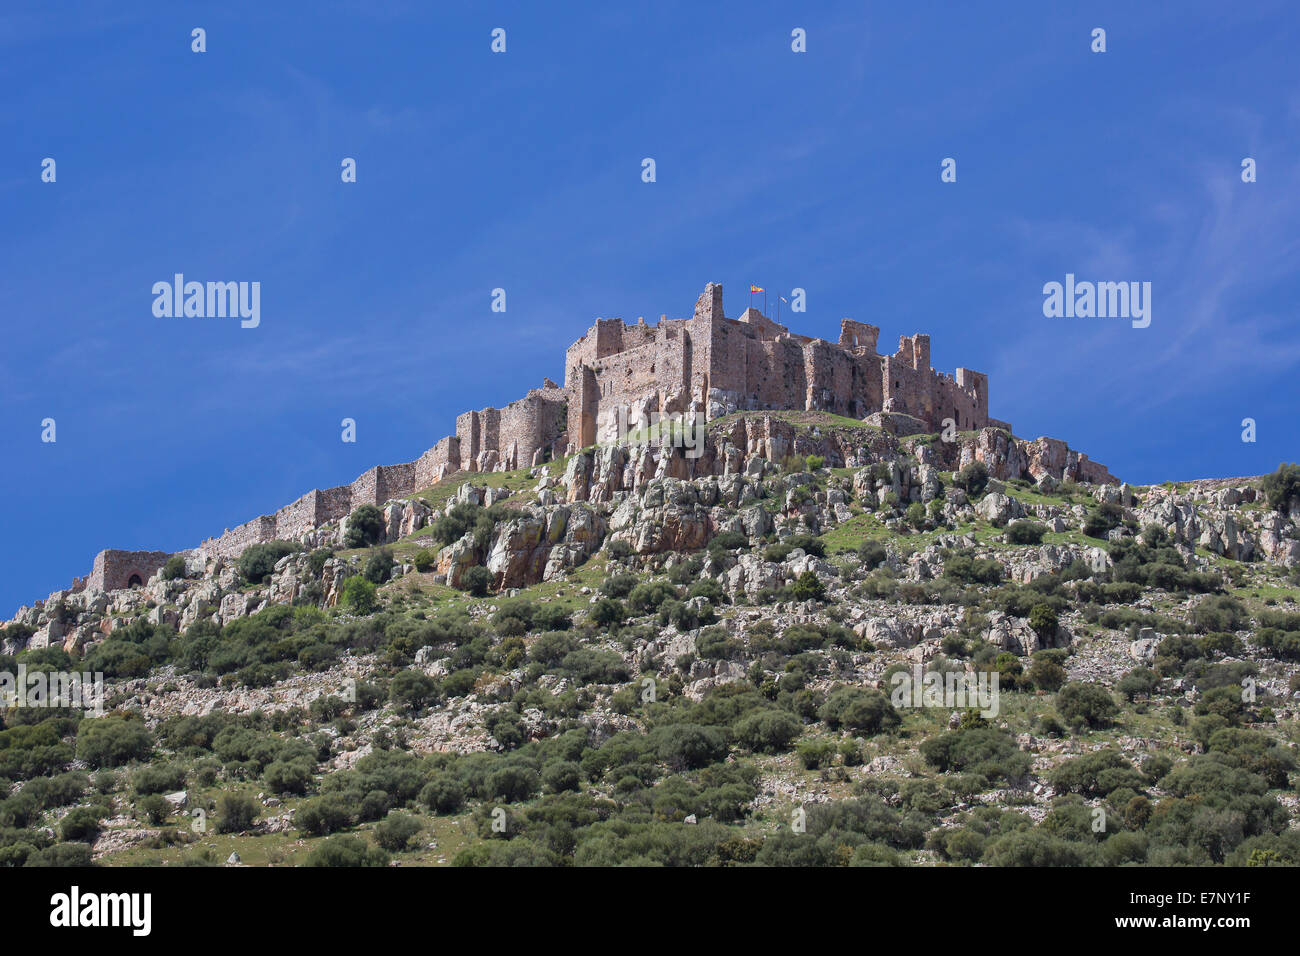 Kastilien, Burg, Ciudad Real, Provinz, Region, Spanien, Europa, Architektur, Calatrava, Festung, Geschichte, La Mancha, Tourismus, t Stockfoto